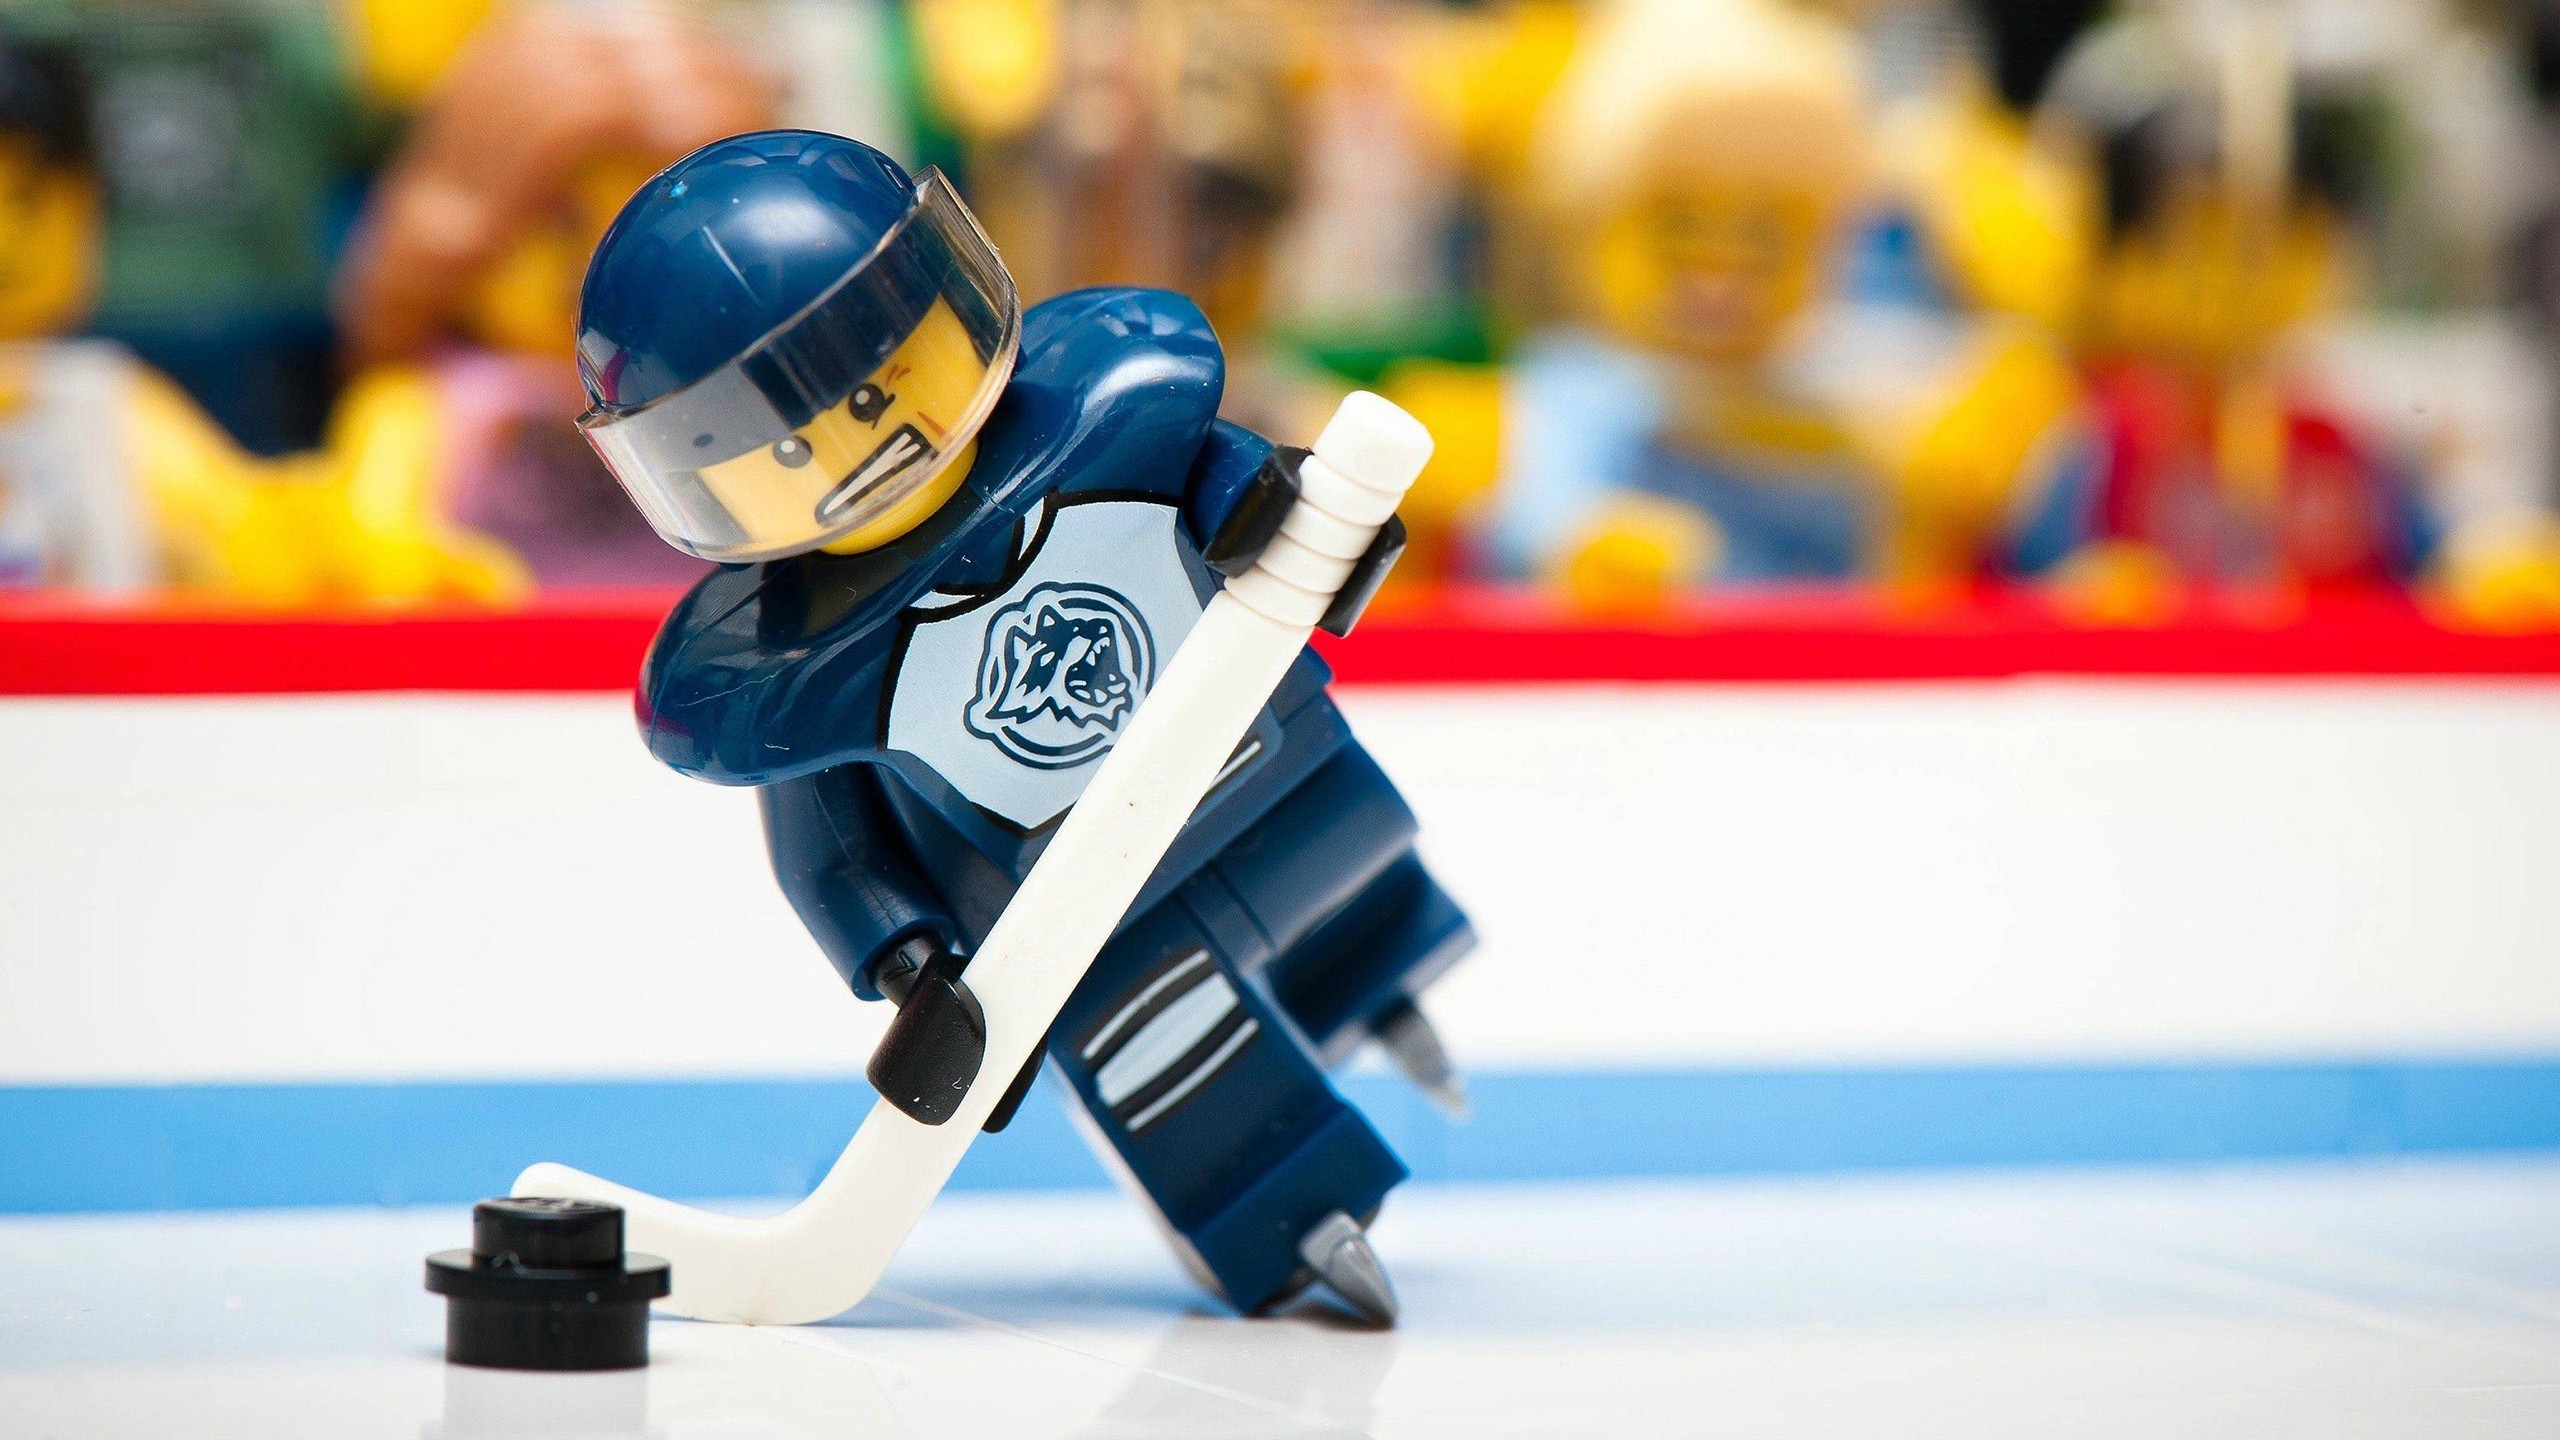 LEGO Ice Hockey NHL Puck Hockey Skates Ice Rink Hockey Stick Visors 2560x1440